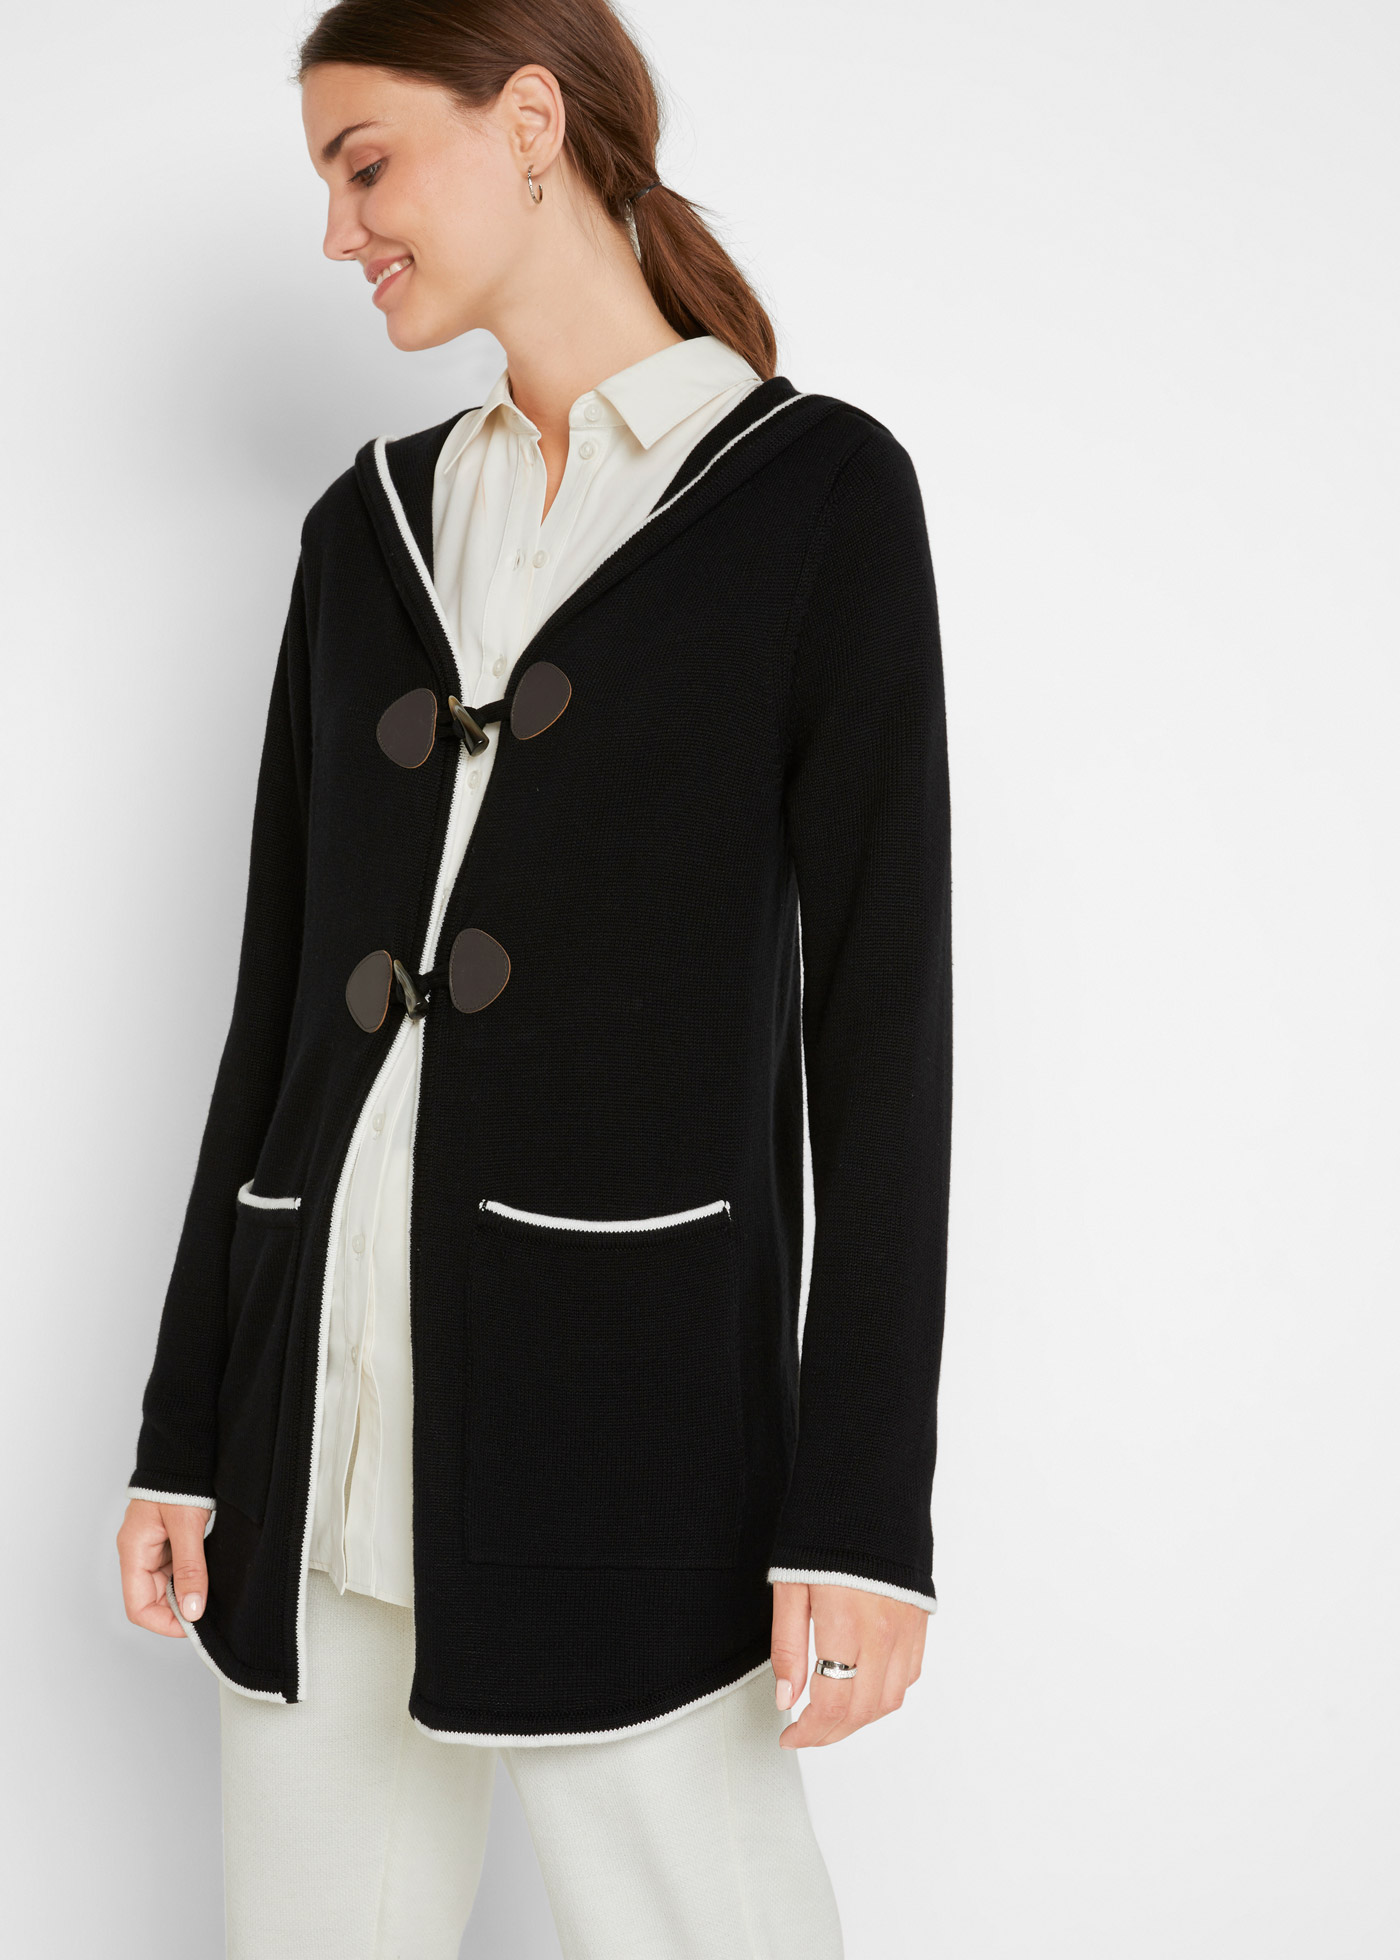 Pletený kabátek s velkou kapucí - Černá